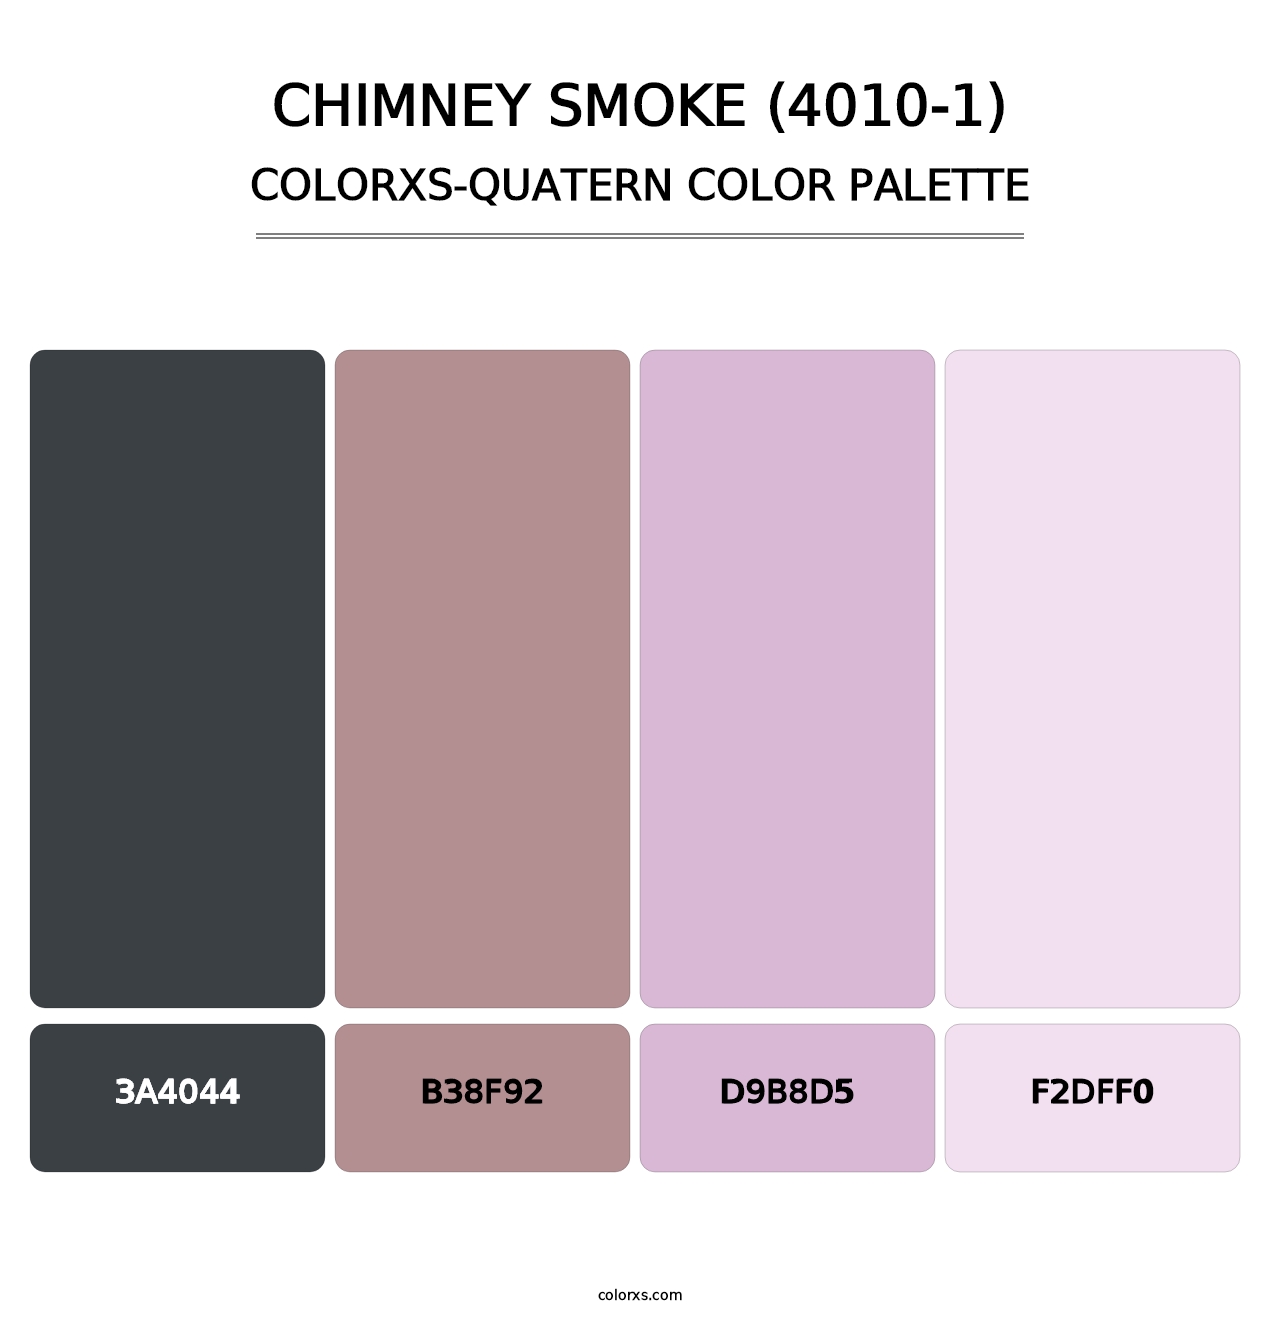 Chimney Smoke (4010-1) - Colorxs Quatern Palette